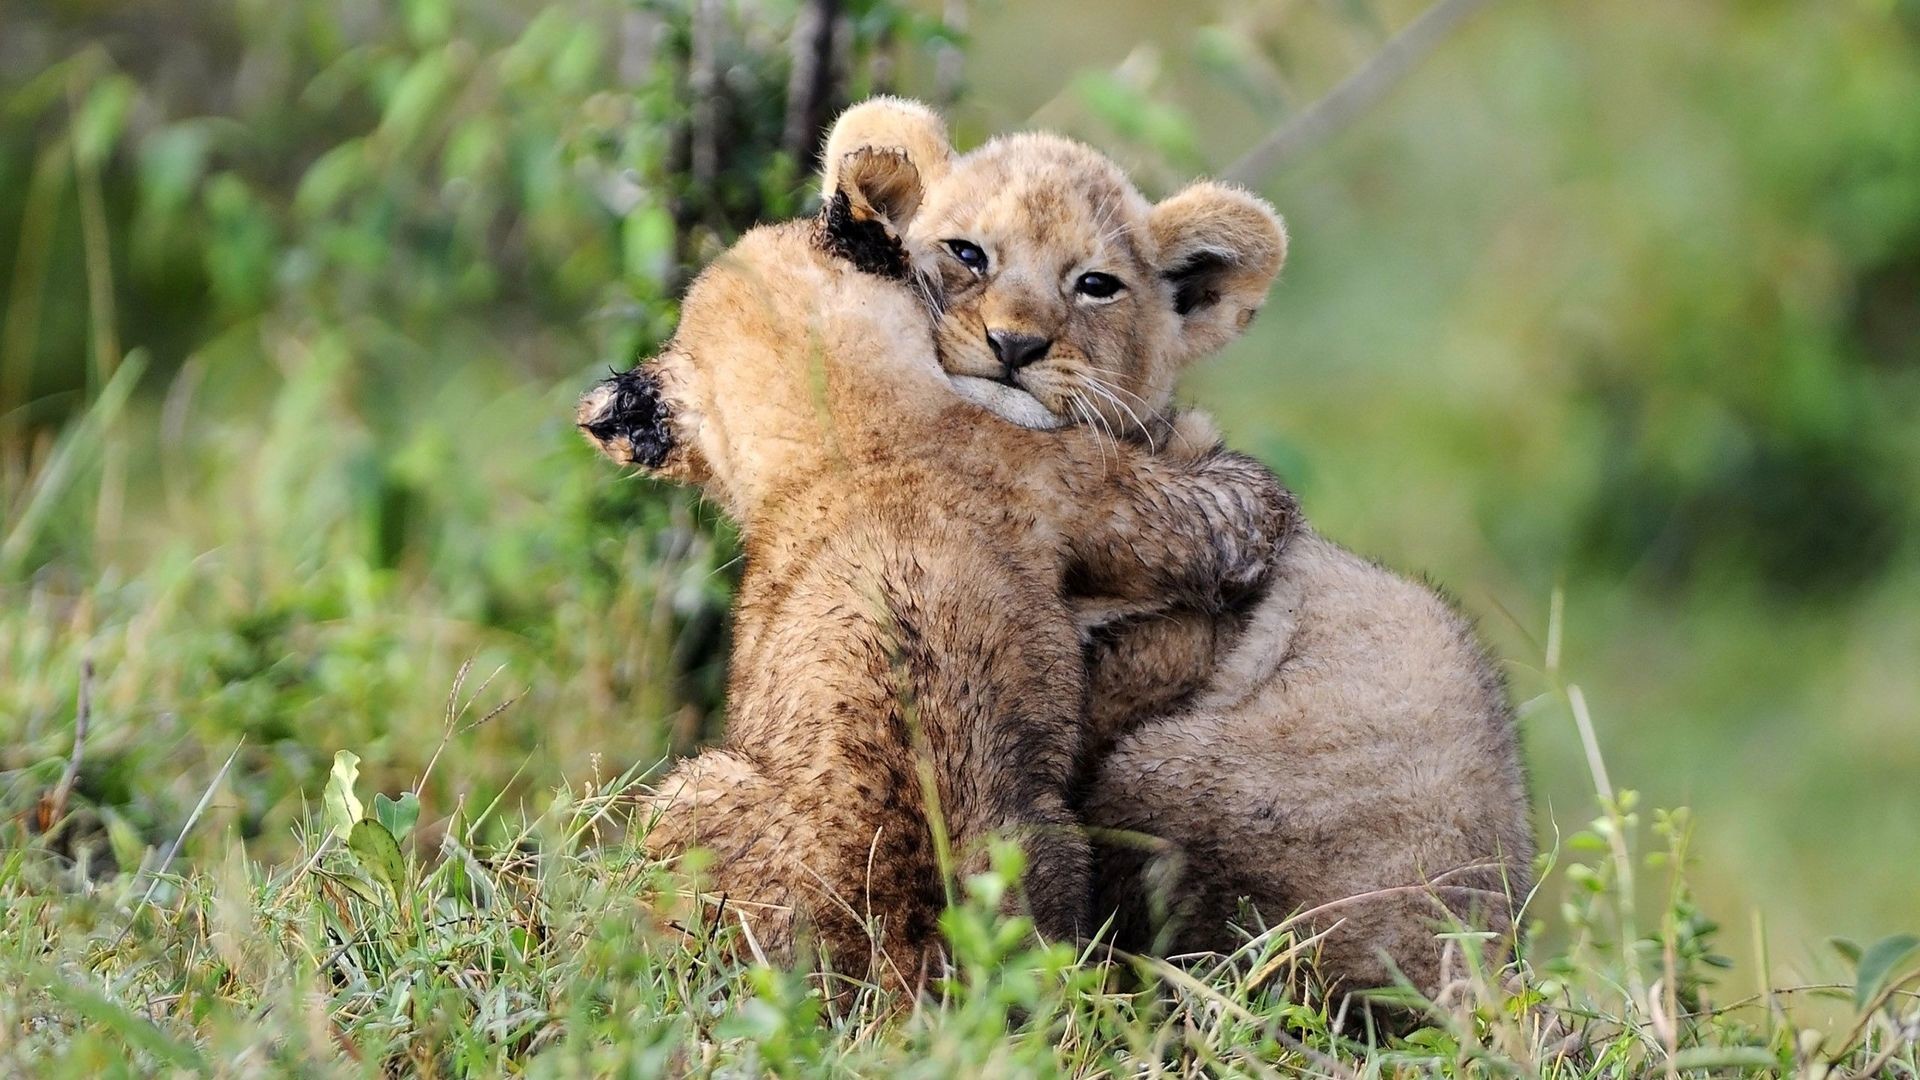 hug wallpaper download,mammal,vertebrate,wildlife,terrestrial animal,felidae